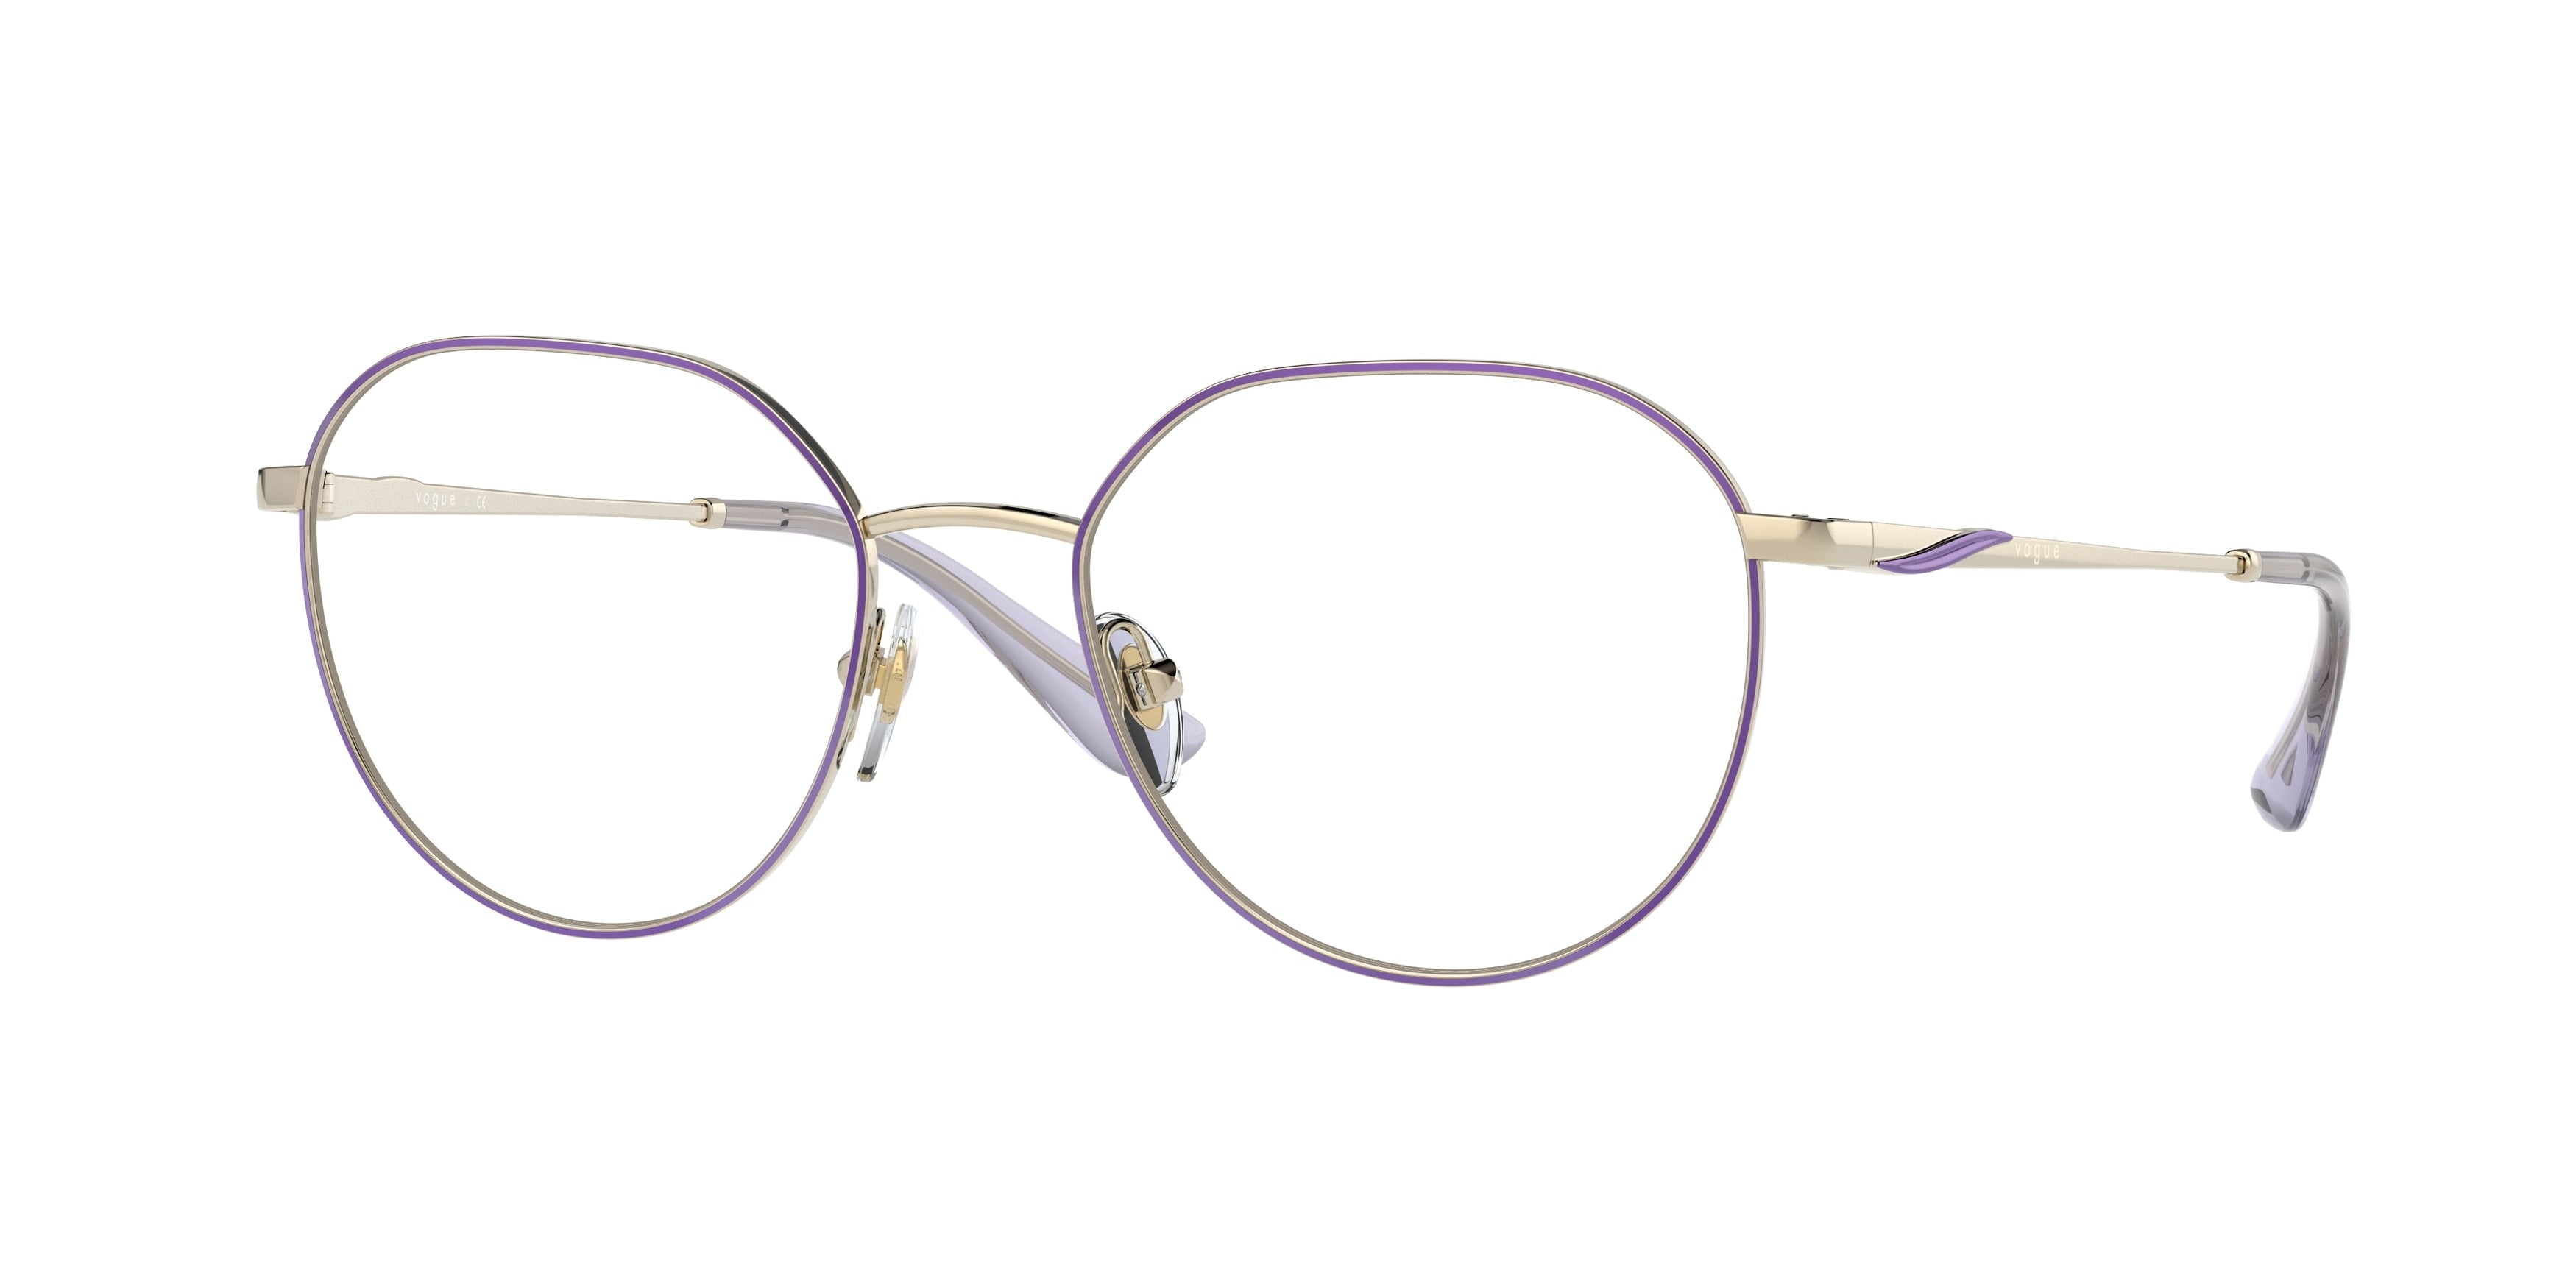 Vogue VO4209 Irregular Eyeglasses  5140-Top Violet/Pale Gold 52-140-18 - Color Map Violet